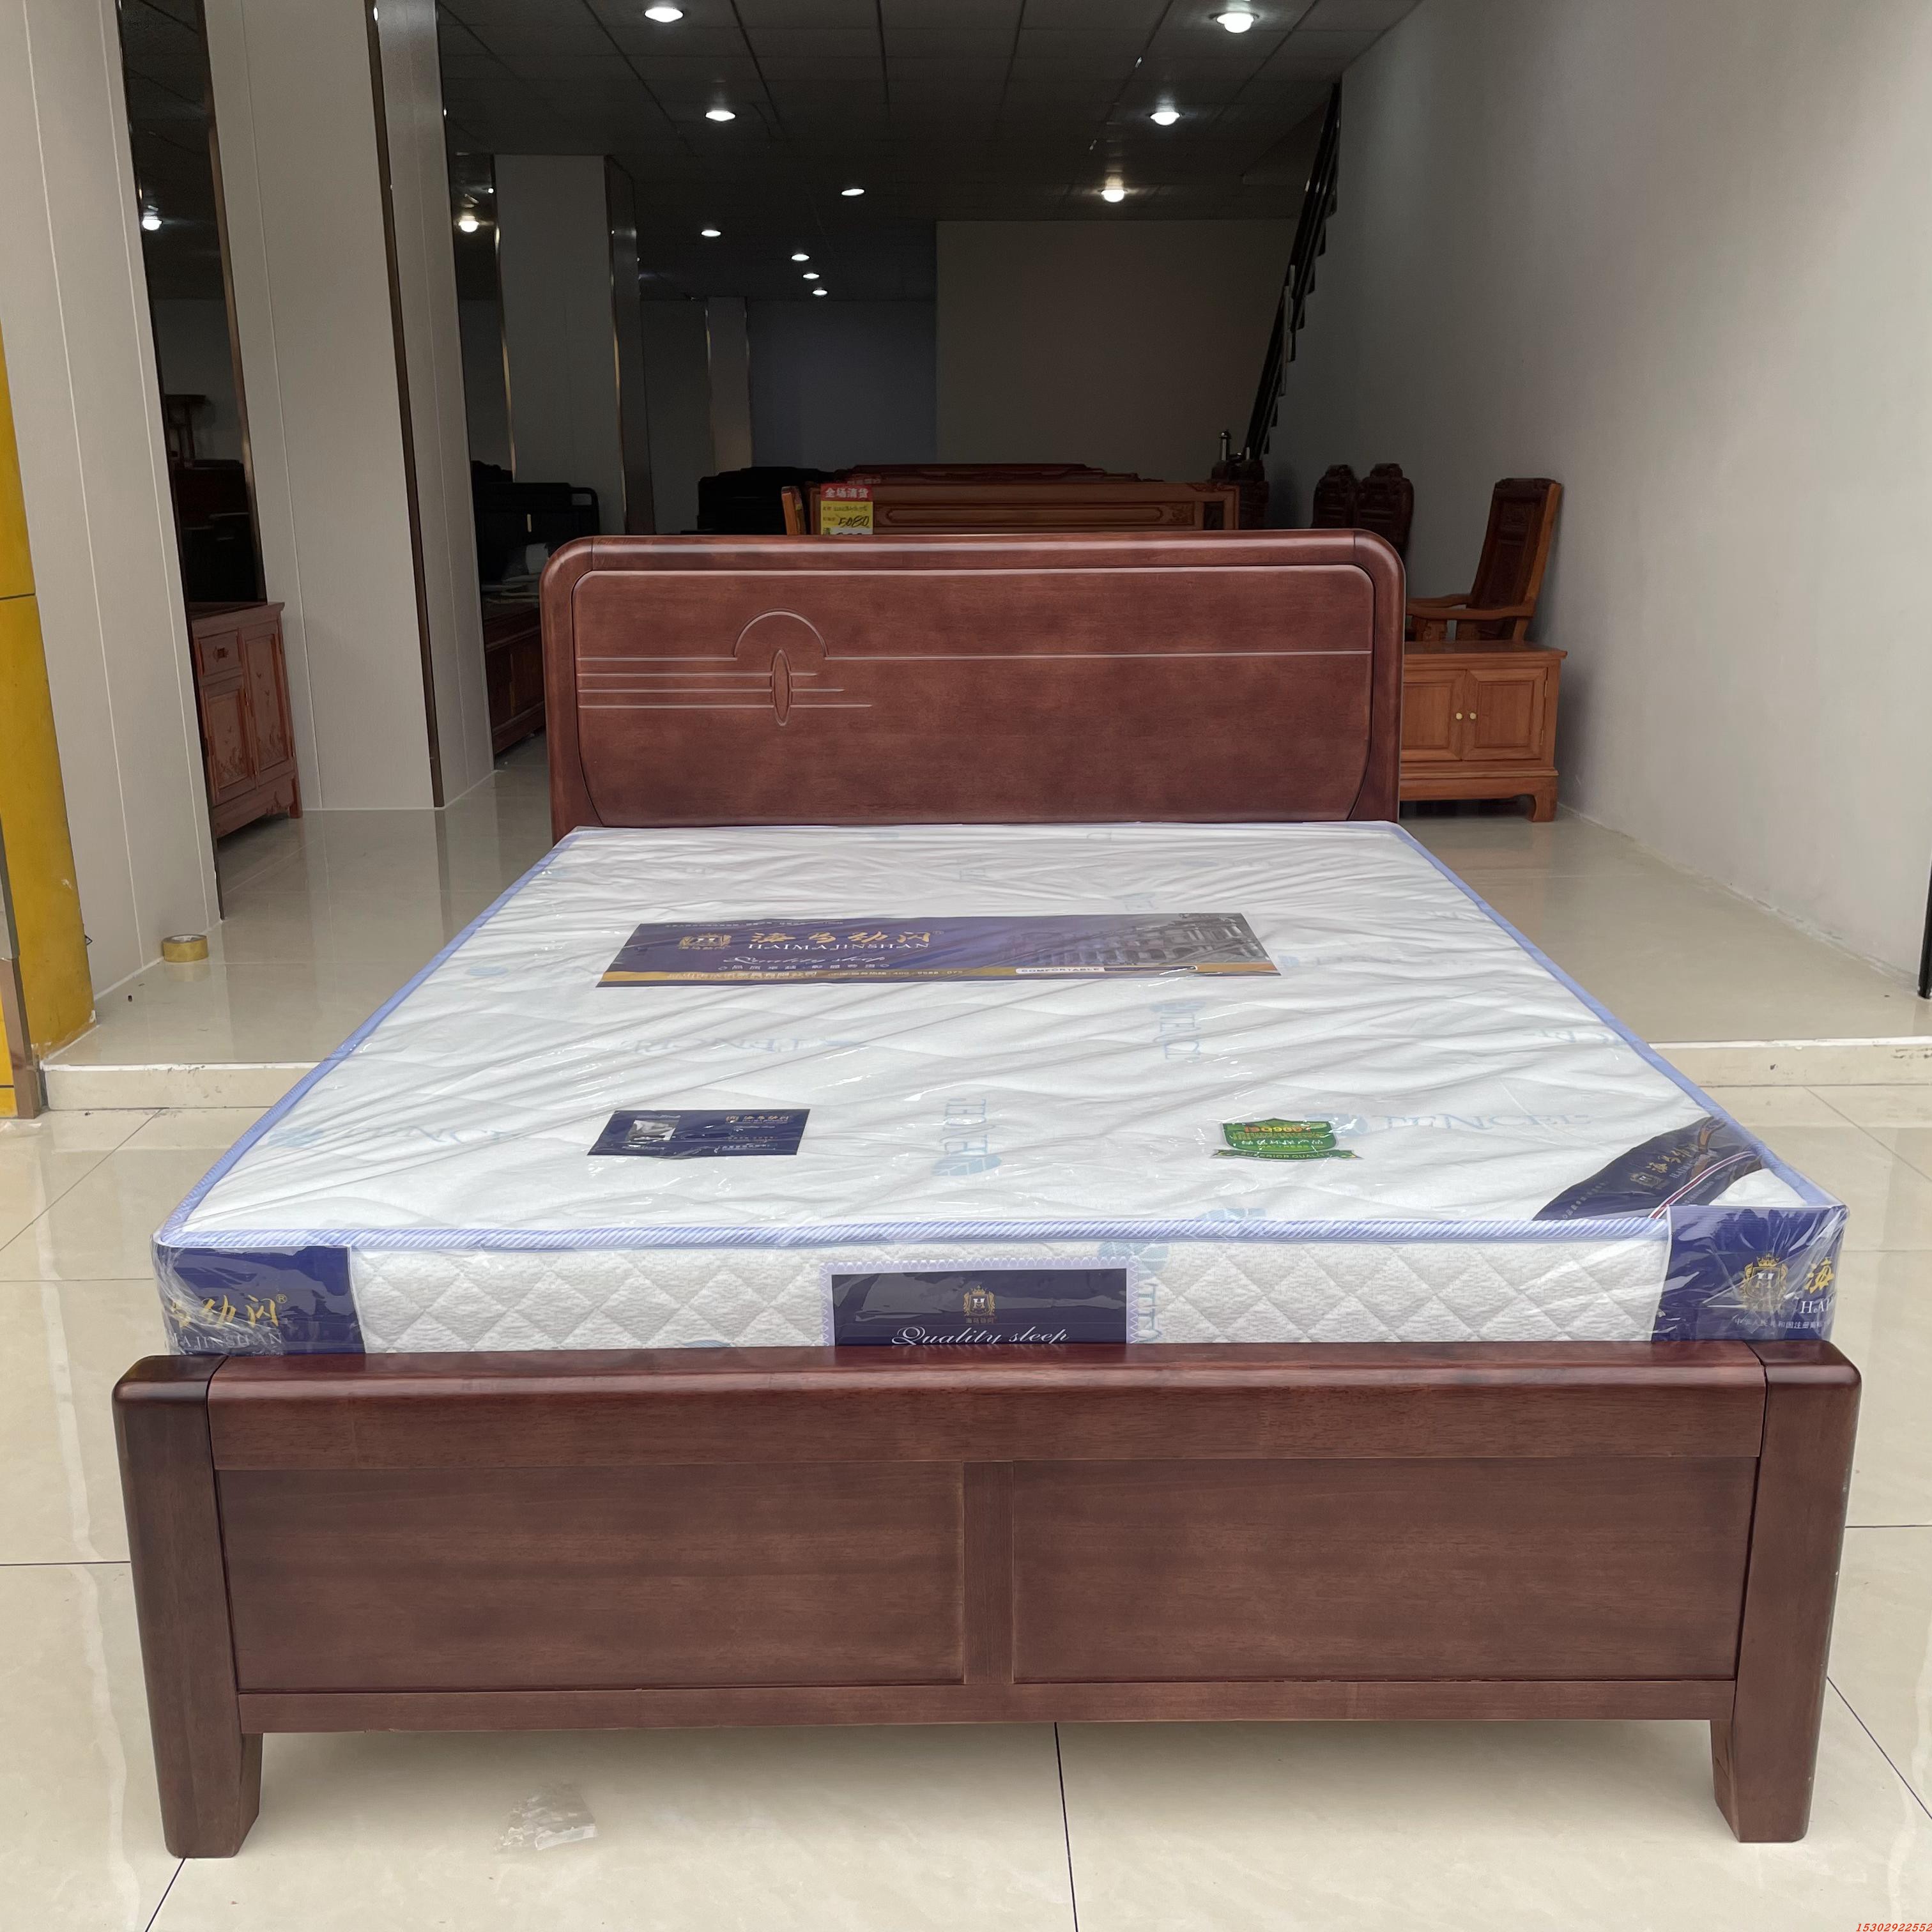 新品新款乌丝檀木要床实木床时尚婚床简约木大床现代18米新卧室床